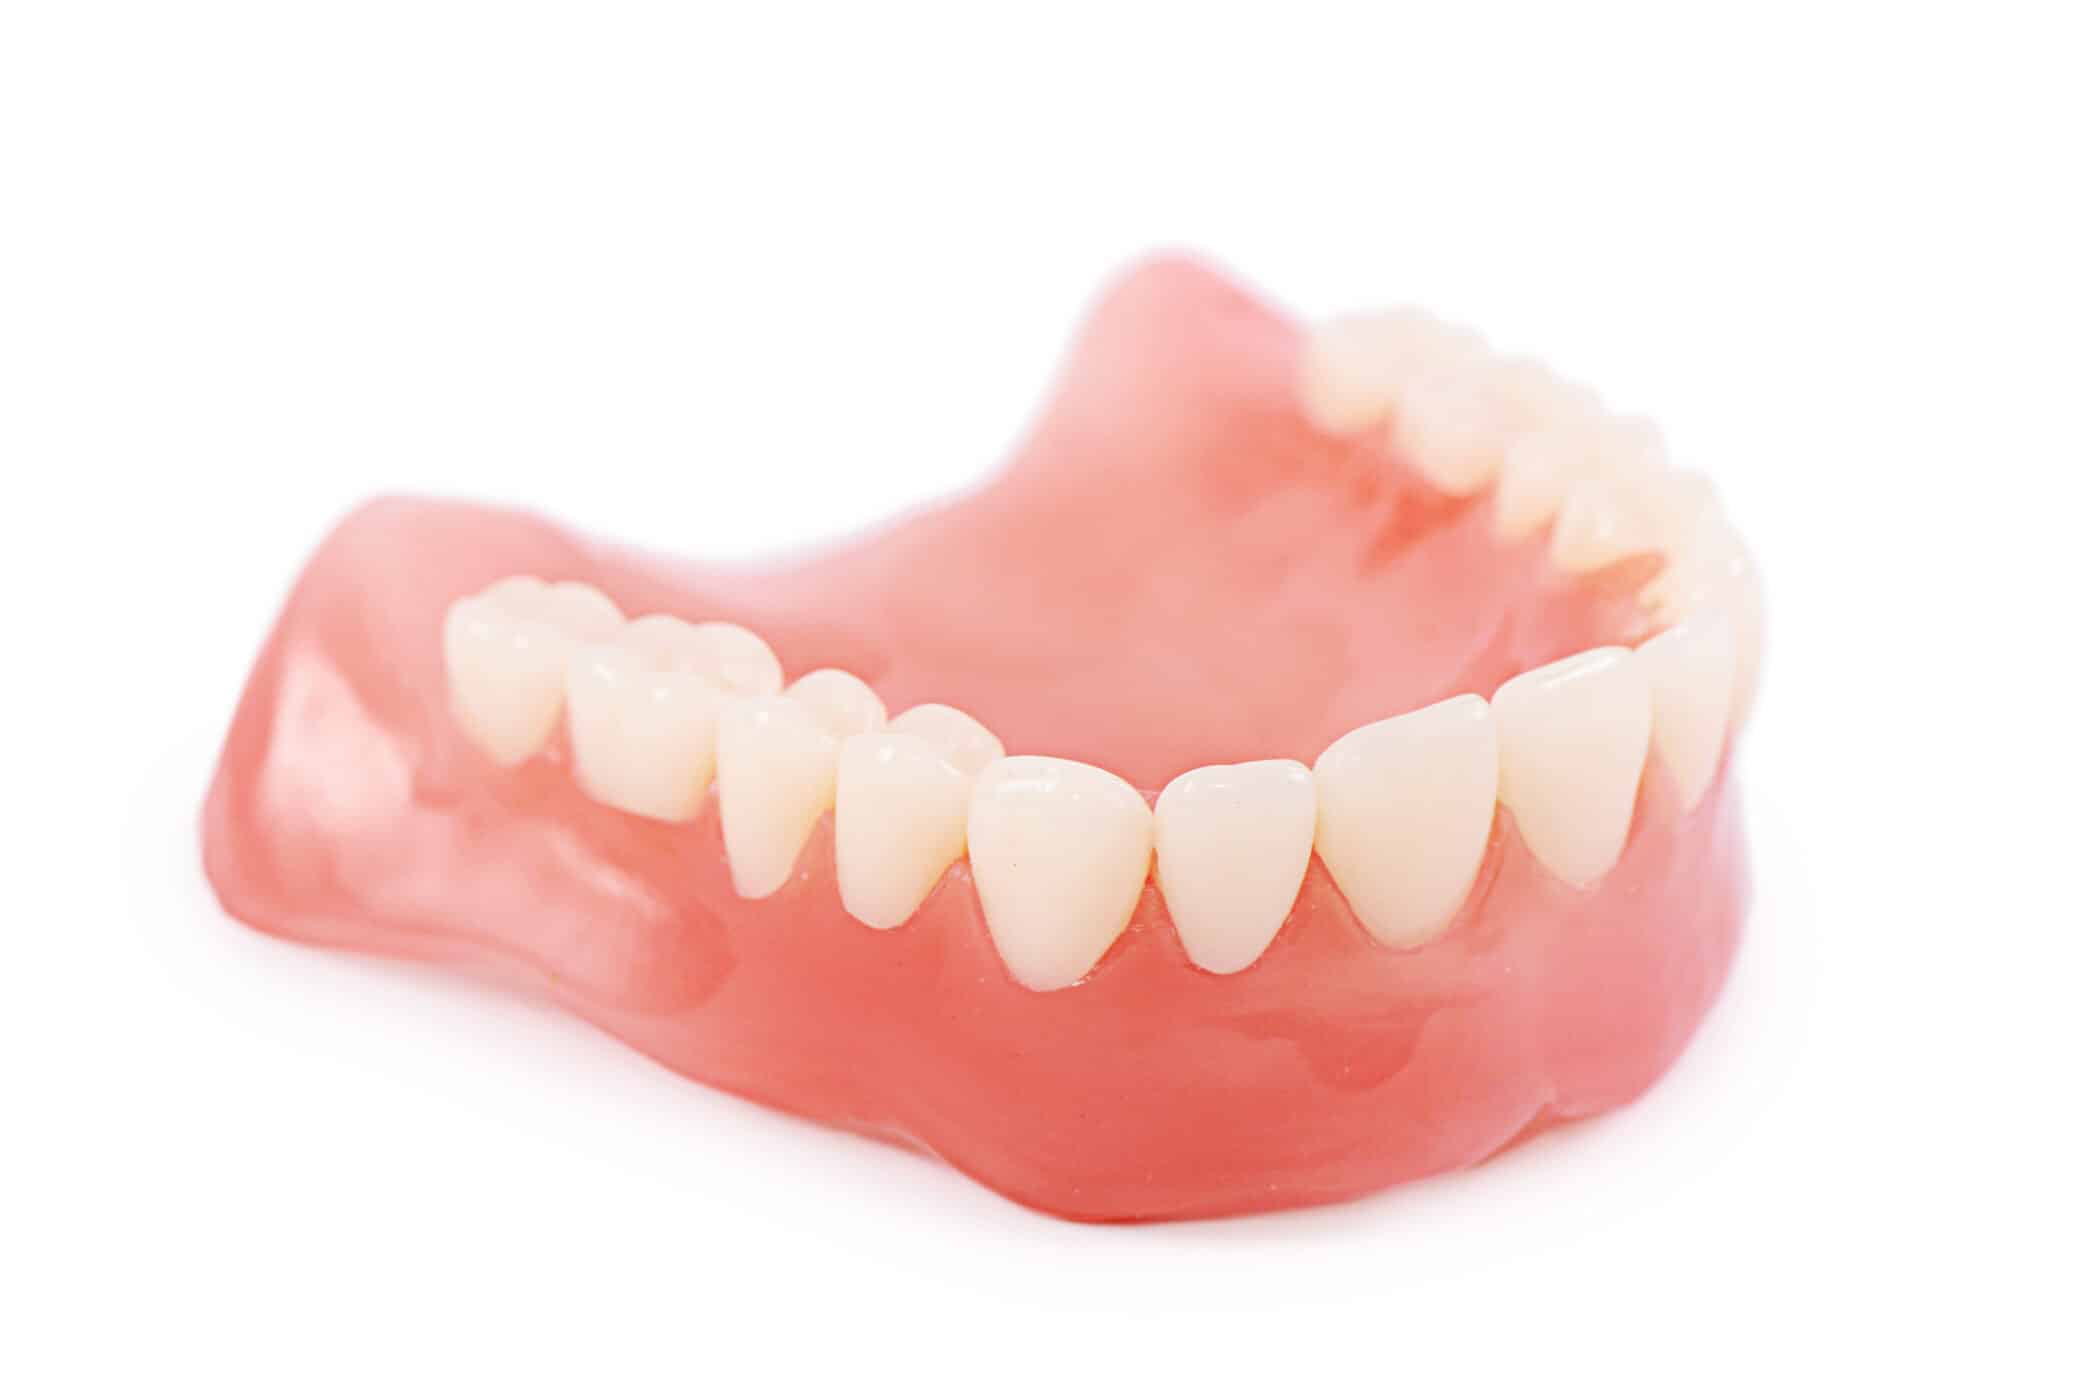 A set of false teeth